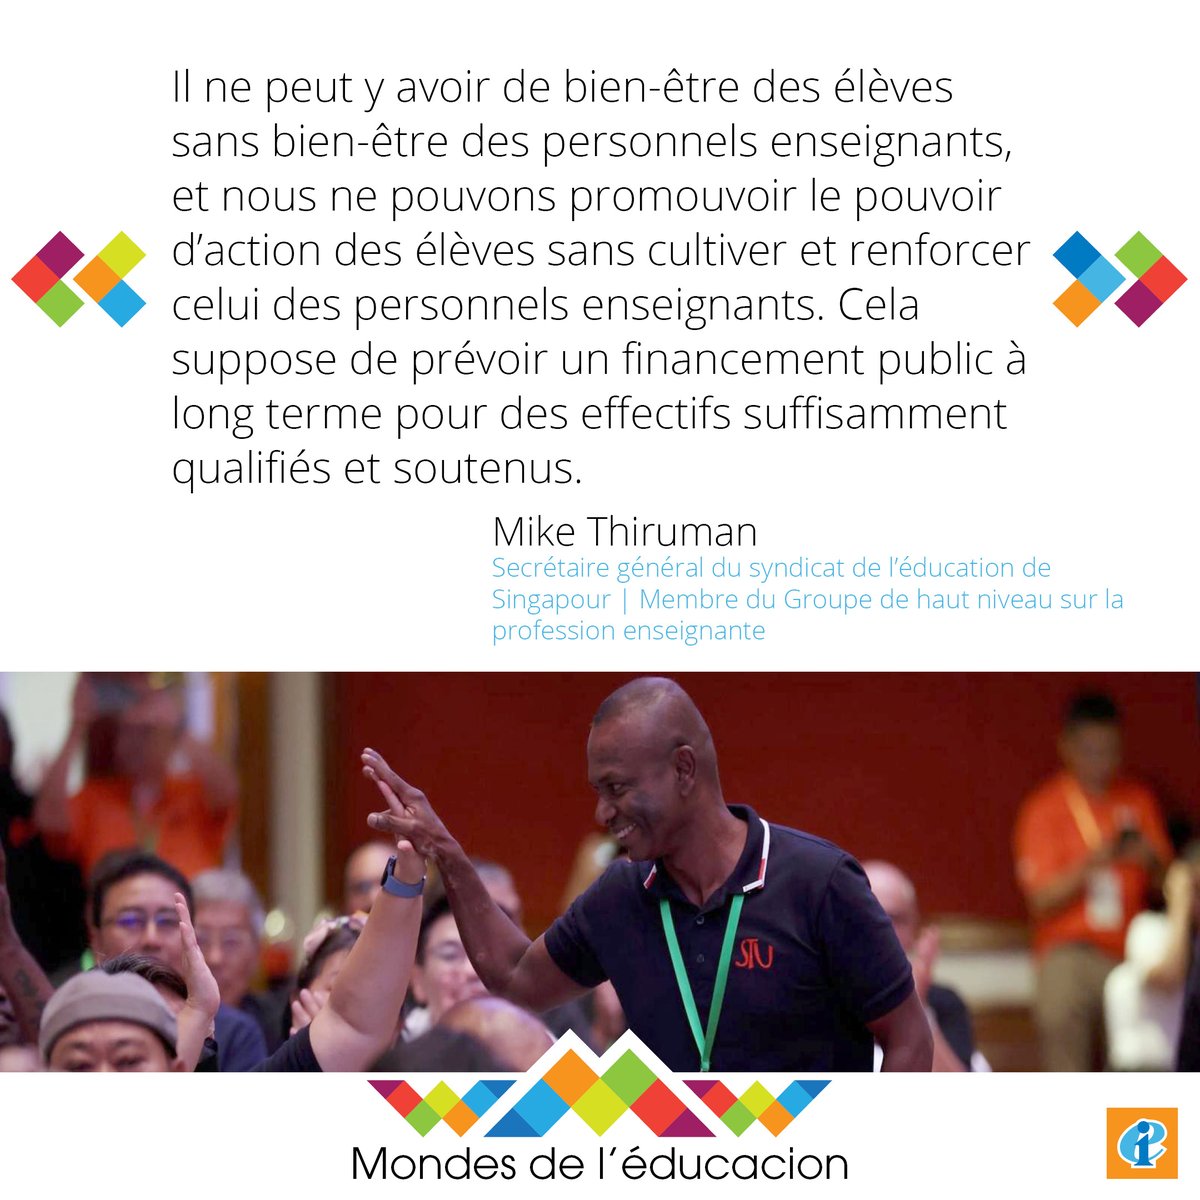 Le Groupe de haut niveau des Nations unies sur la profession enseignante a publié ses recommandations. Mike Thiruman revient sur sa participation et sur les possibilités d'une approche plus collaborative de l'élaboration des politiques éducatives. ➡️ eiie.io/3Tfn4Ng